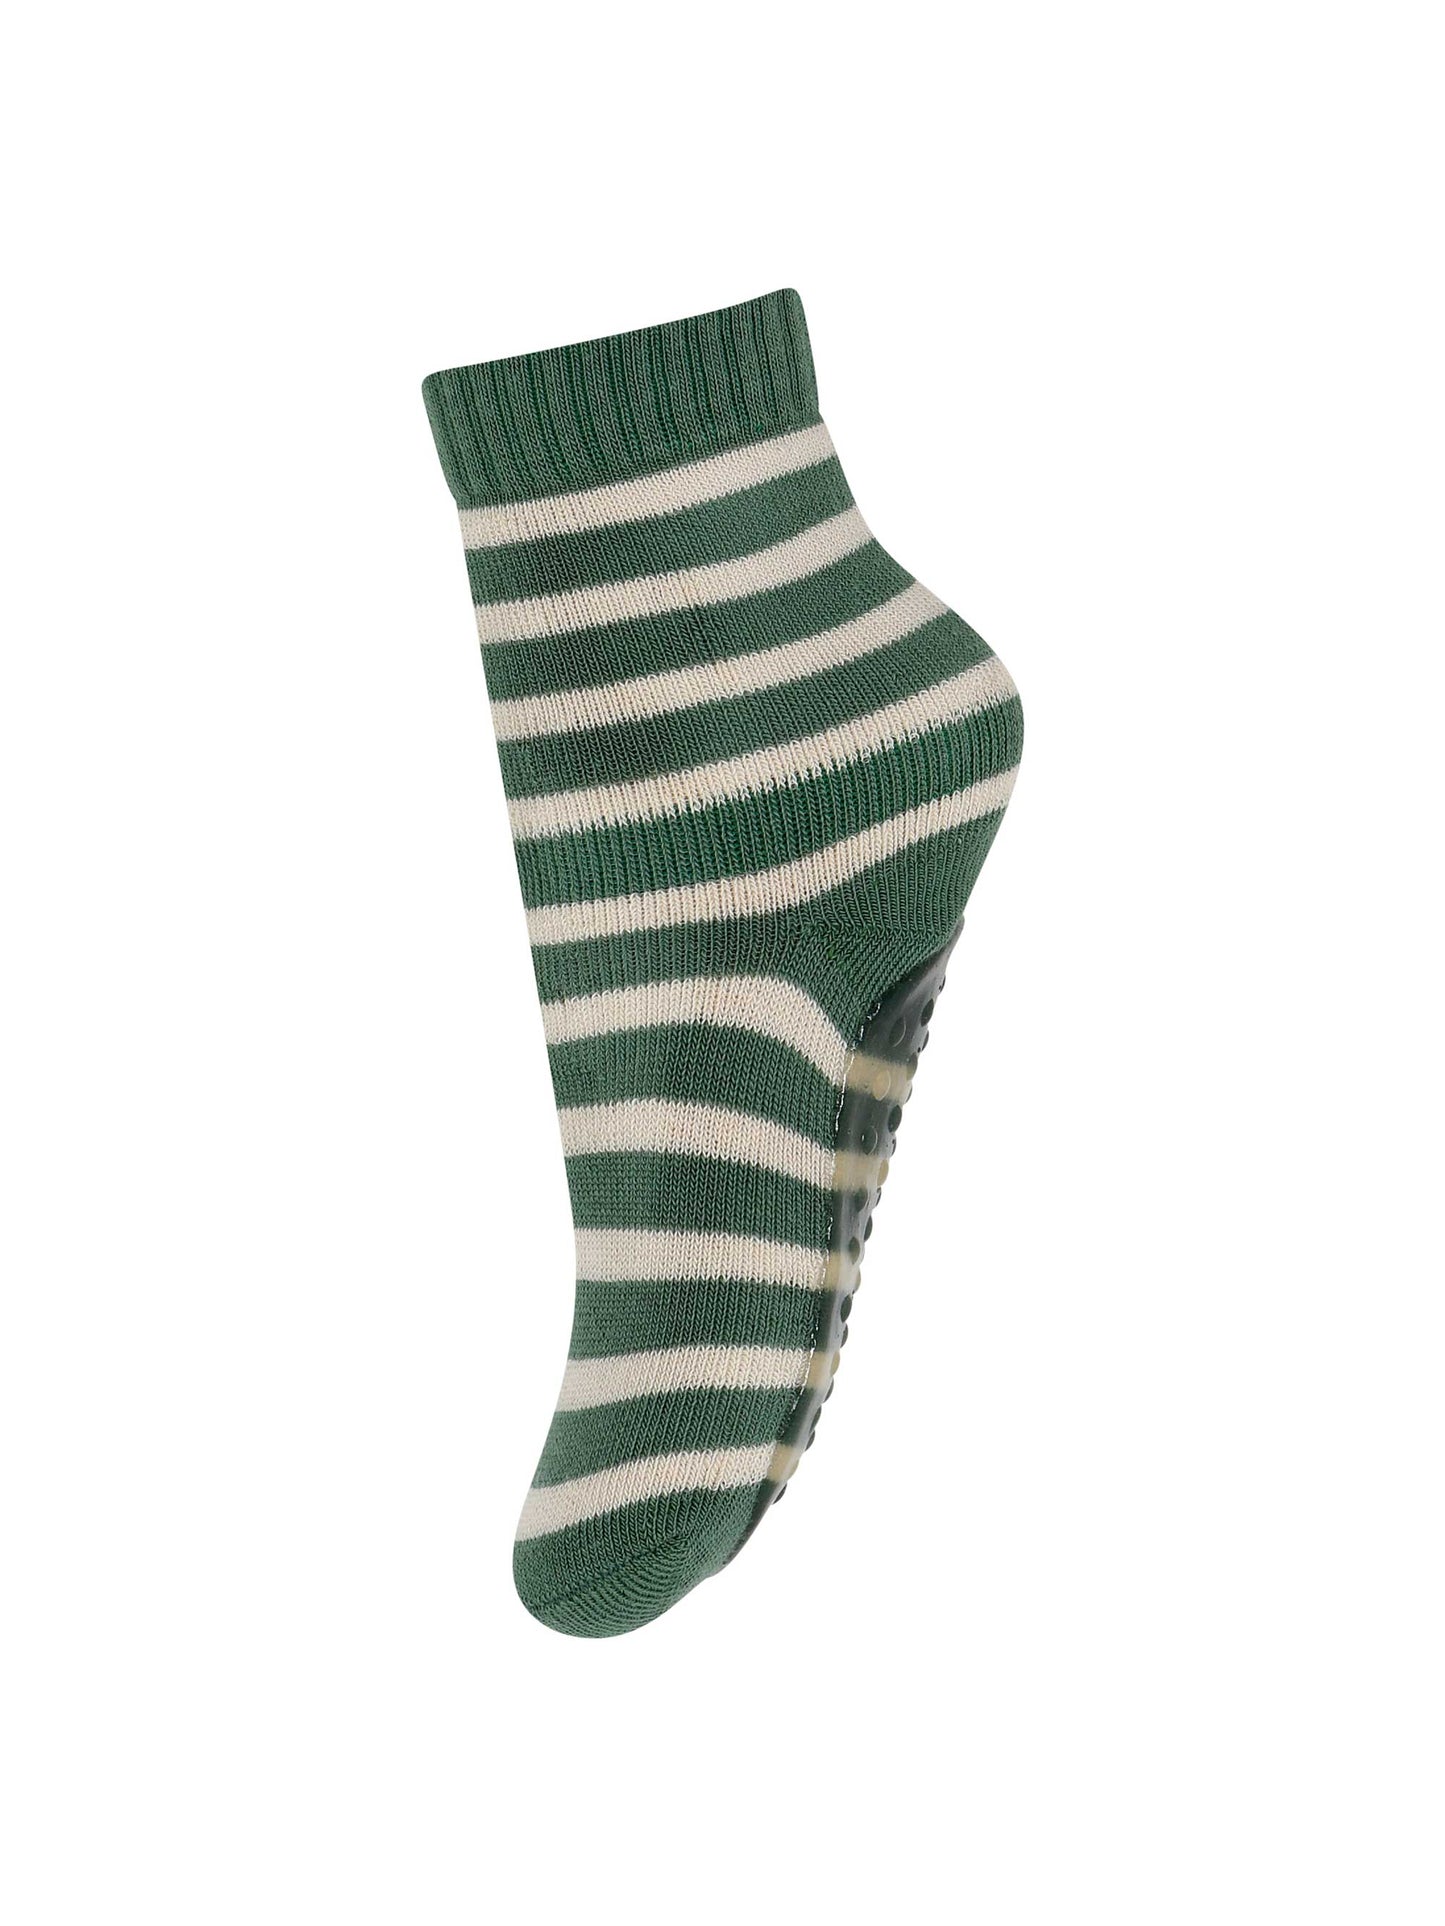 Green Stripe Slipper Socks